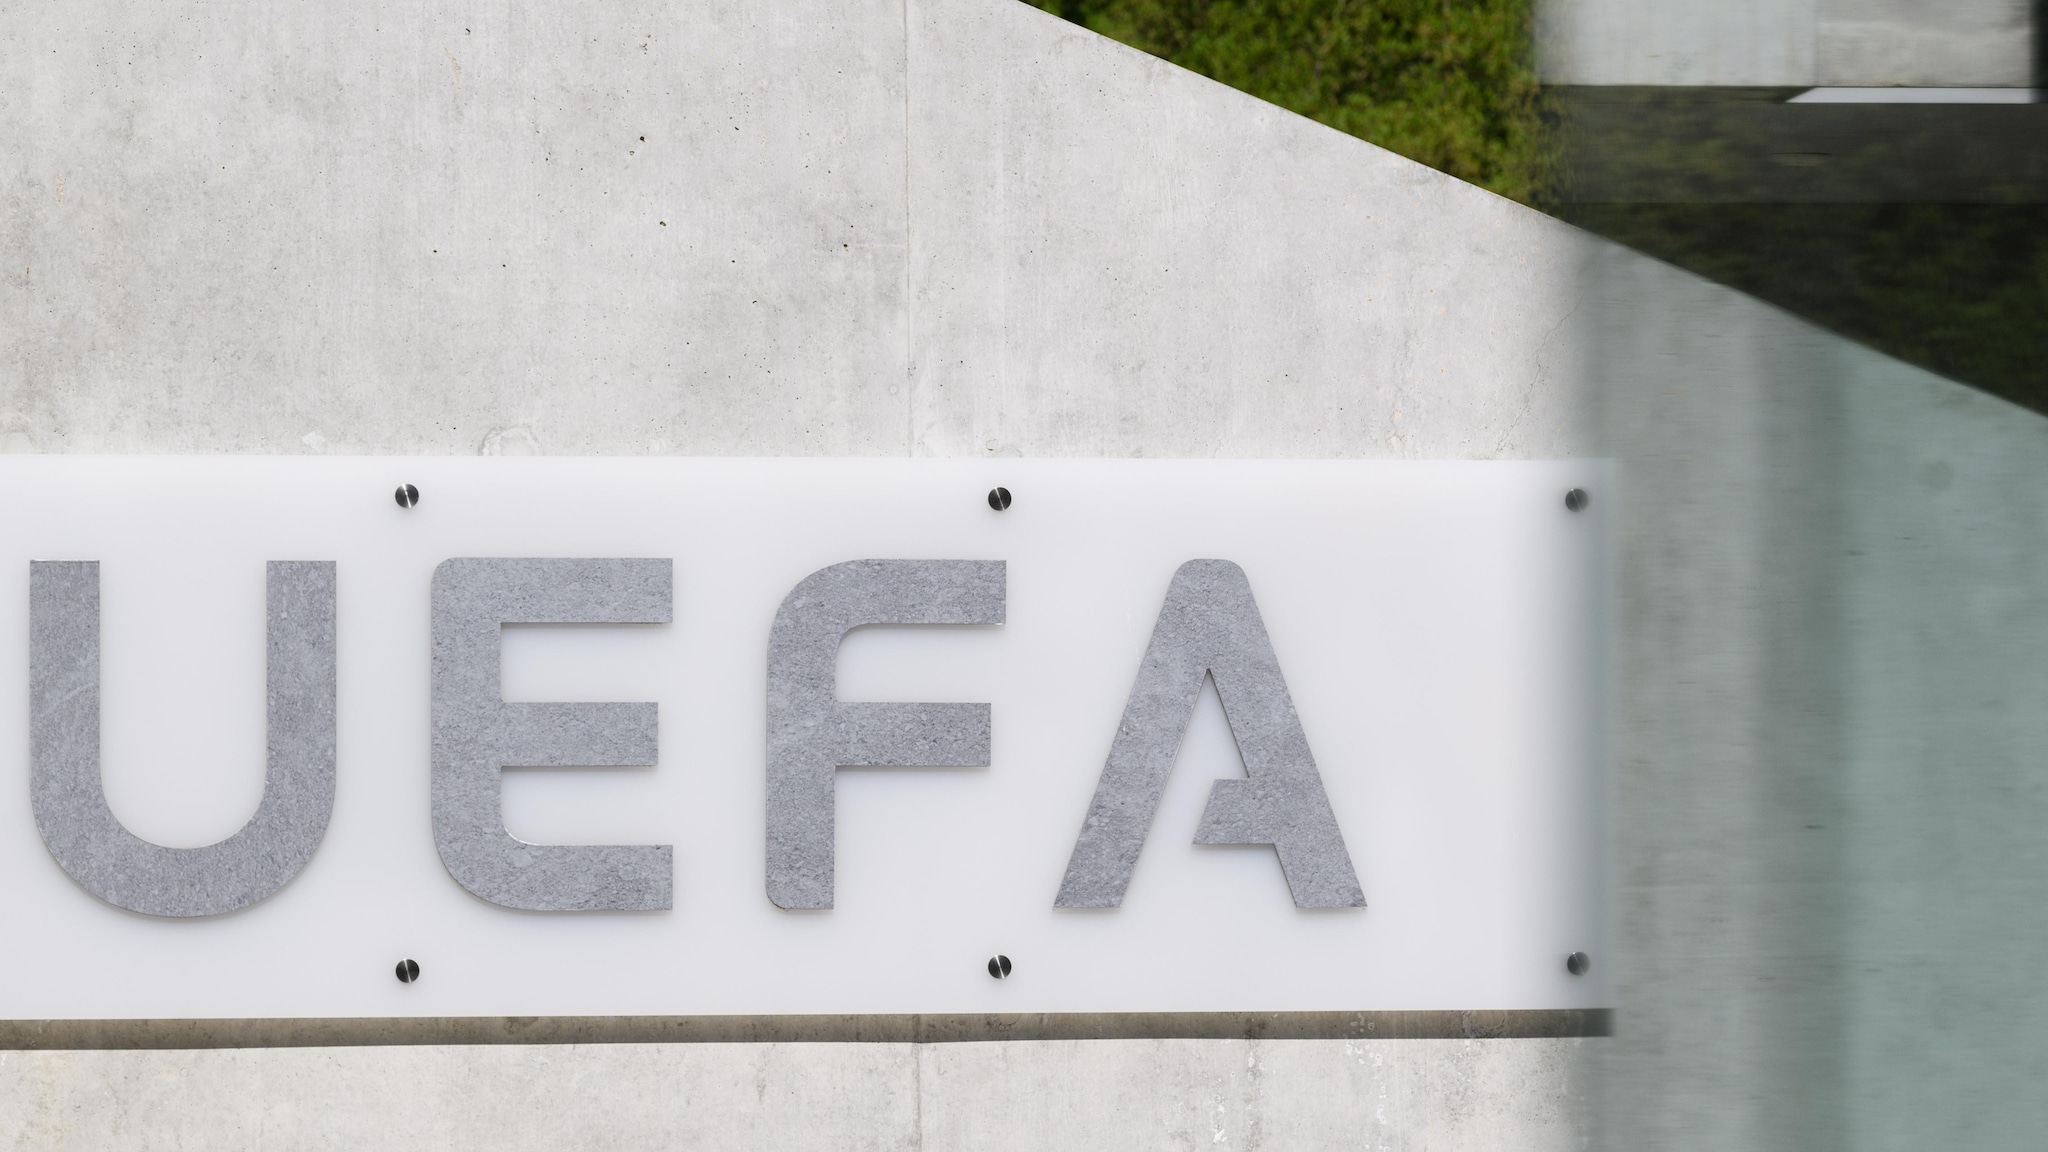 UEFA encomenda relatório independente sobre finais da UEFA Champions League |  UEFA